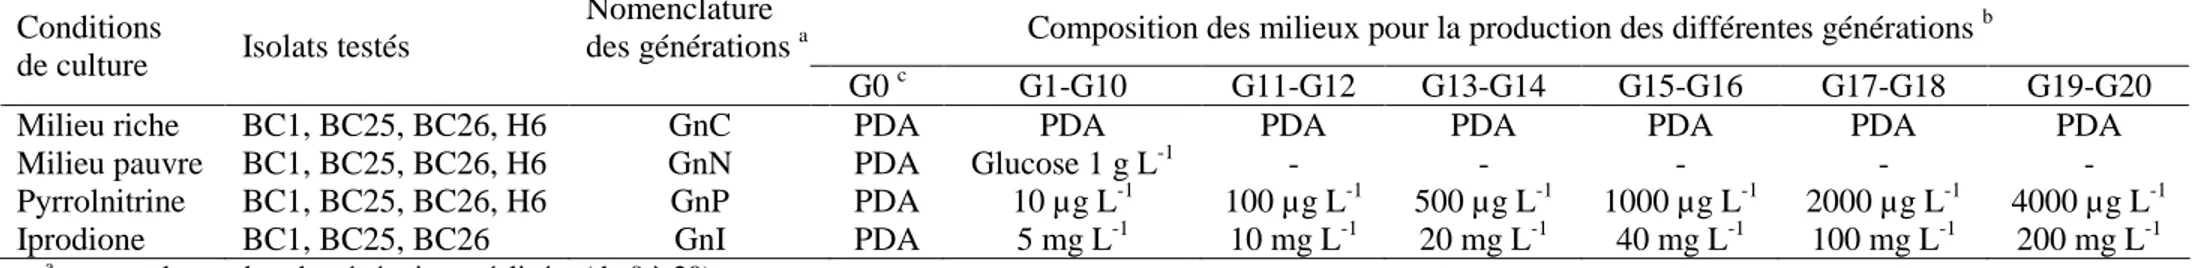 Tableau 1.  Composition des milieux de culture utilisés pour la production de générations successives des différents isolats de Botrytis cinerea 